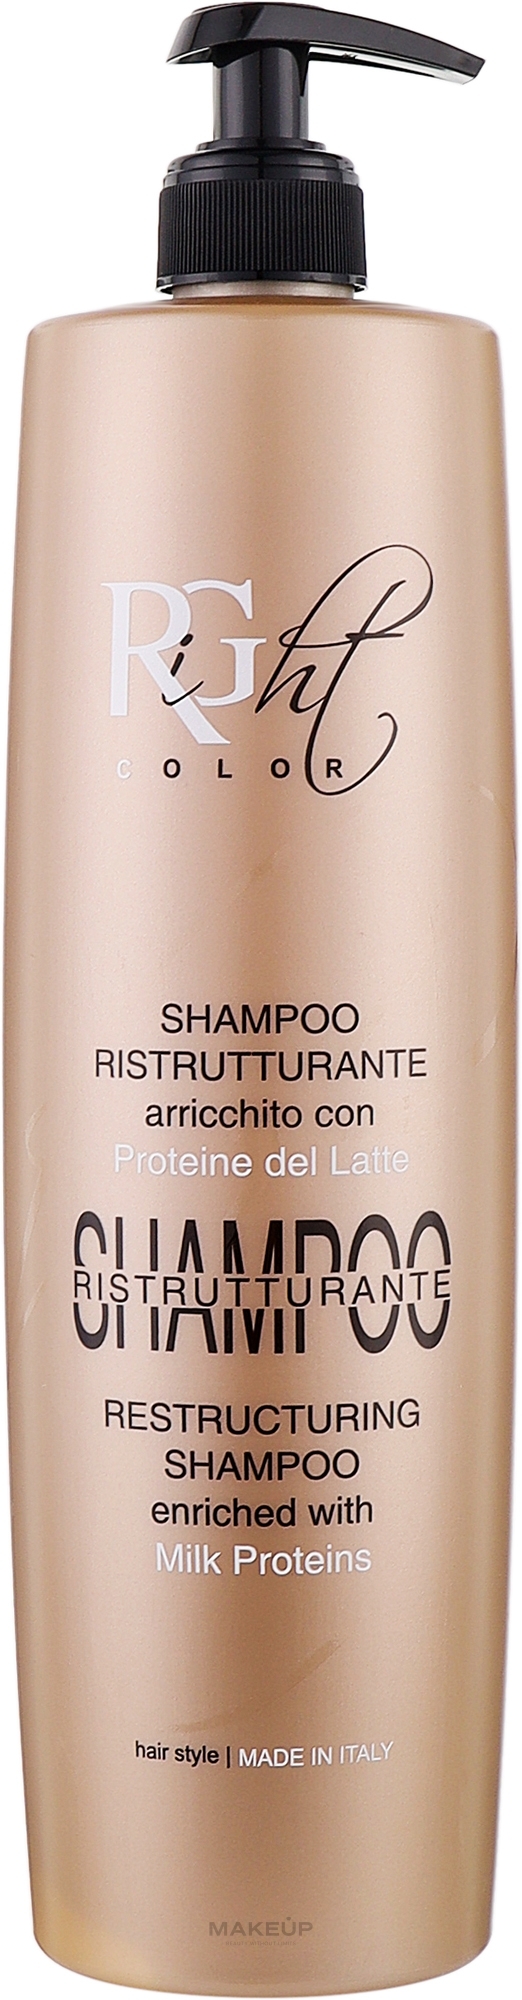 Шампунь для реструктуризации волос с молочными протеинами - Right Color Restructurimg Shampoo — фото 1000ml